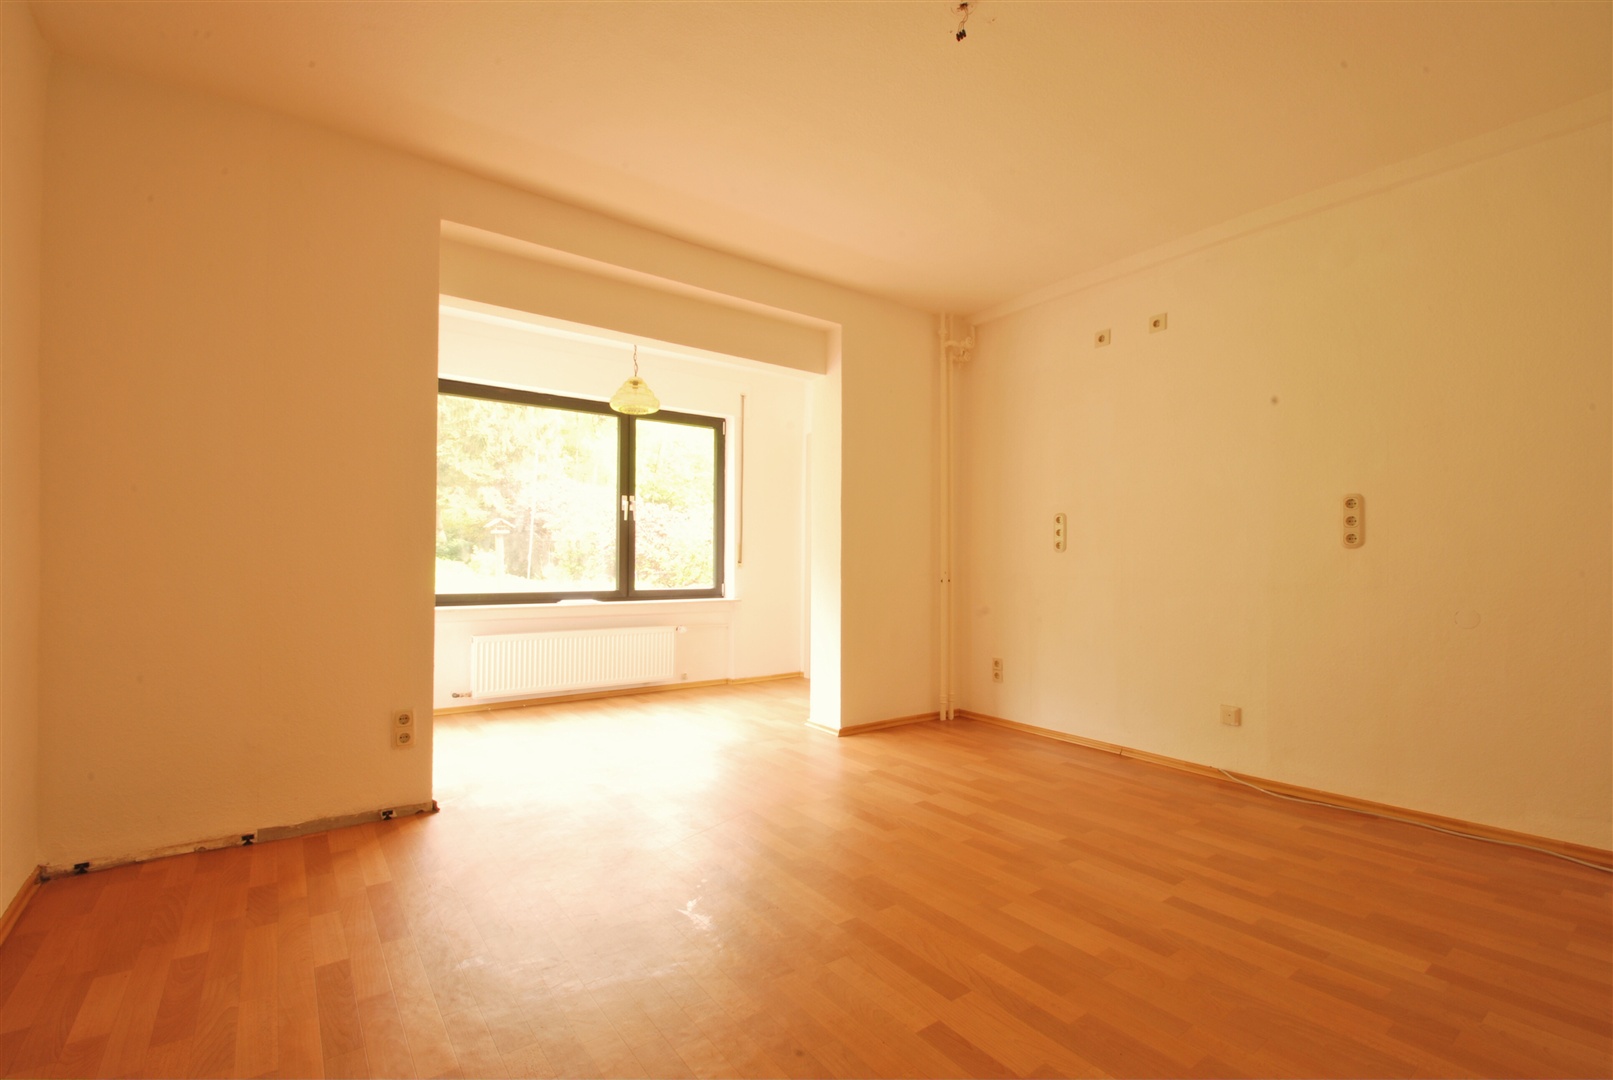 küchenraum im eg mit eigener eingangstür zur wohnung - Oliver Reifferscheid - Immobilienmakler Darmstadt